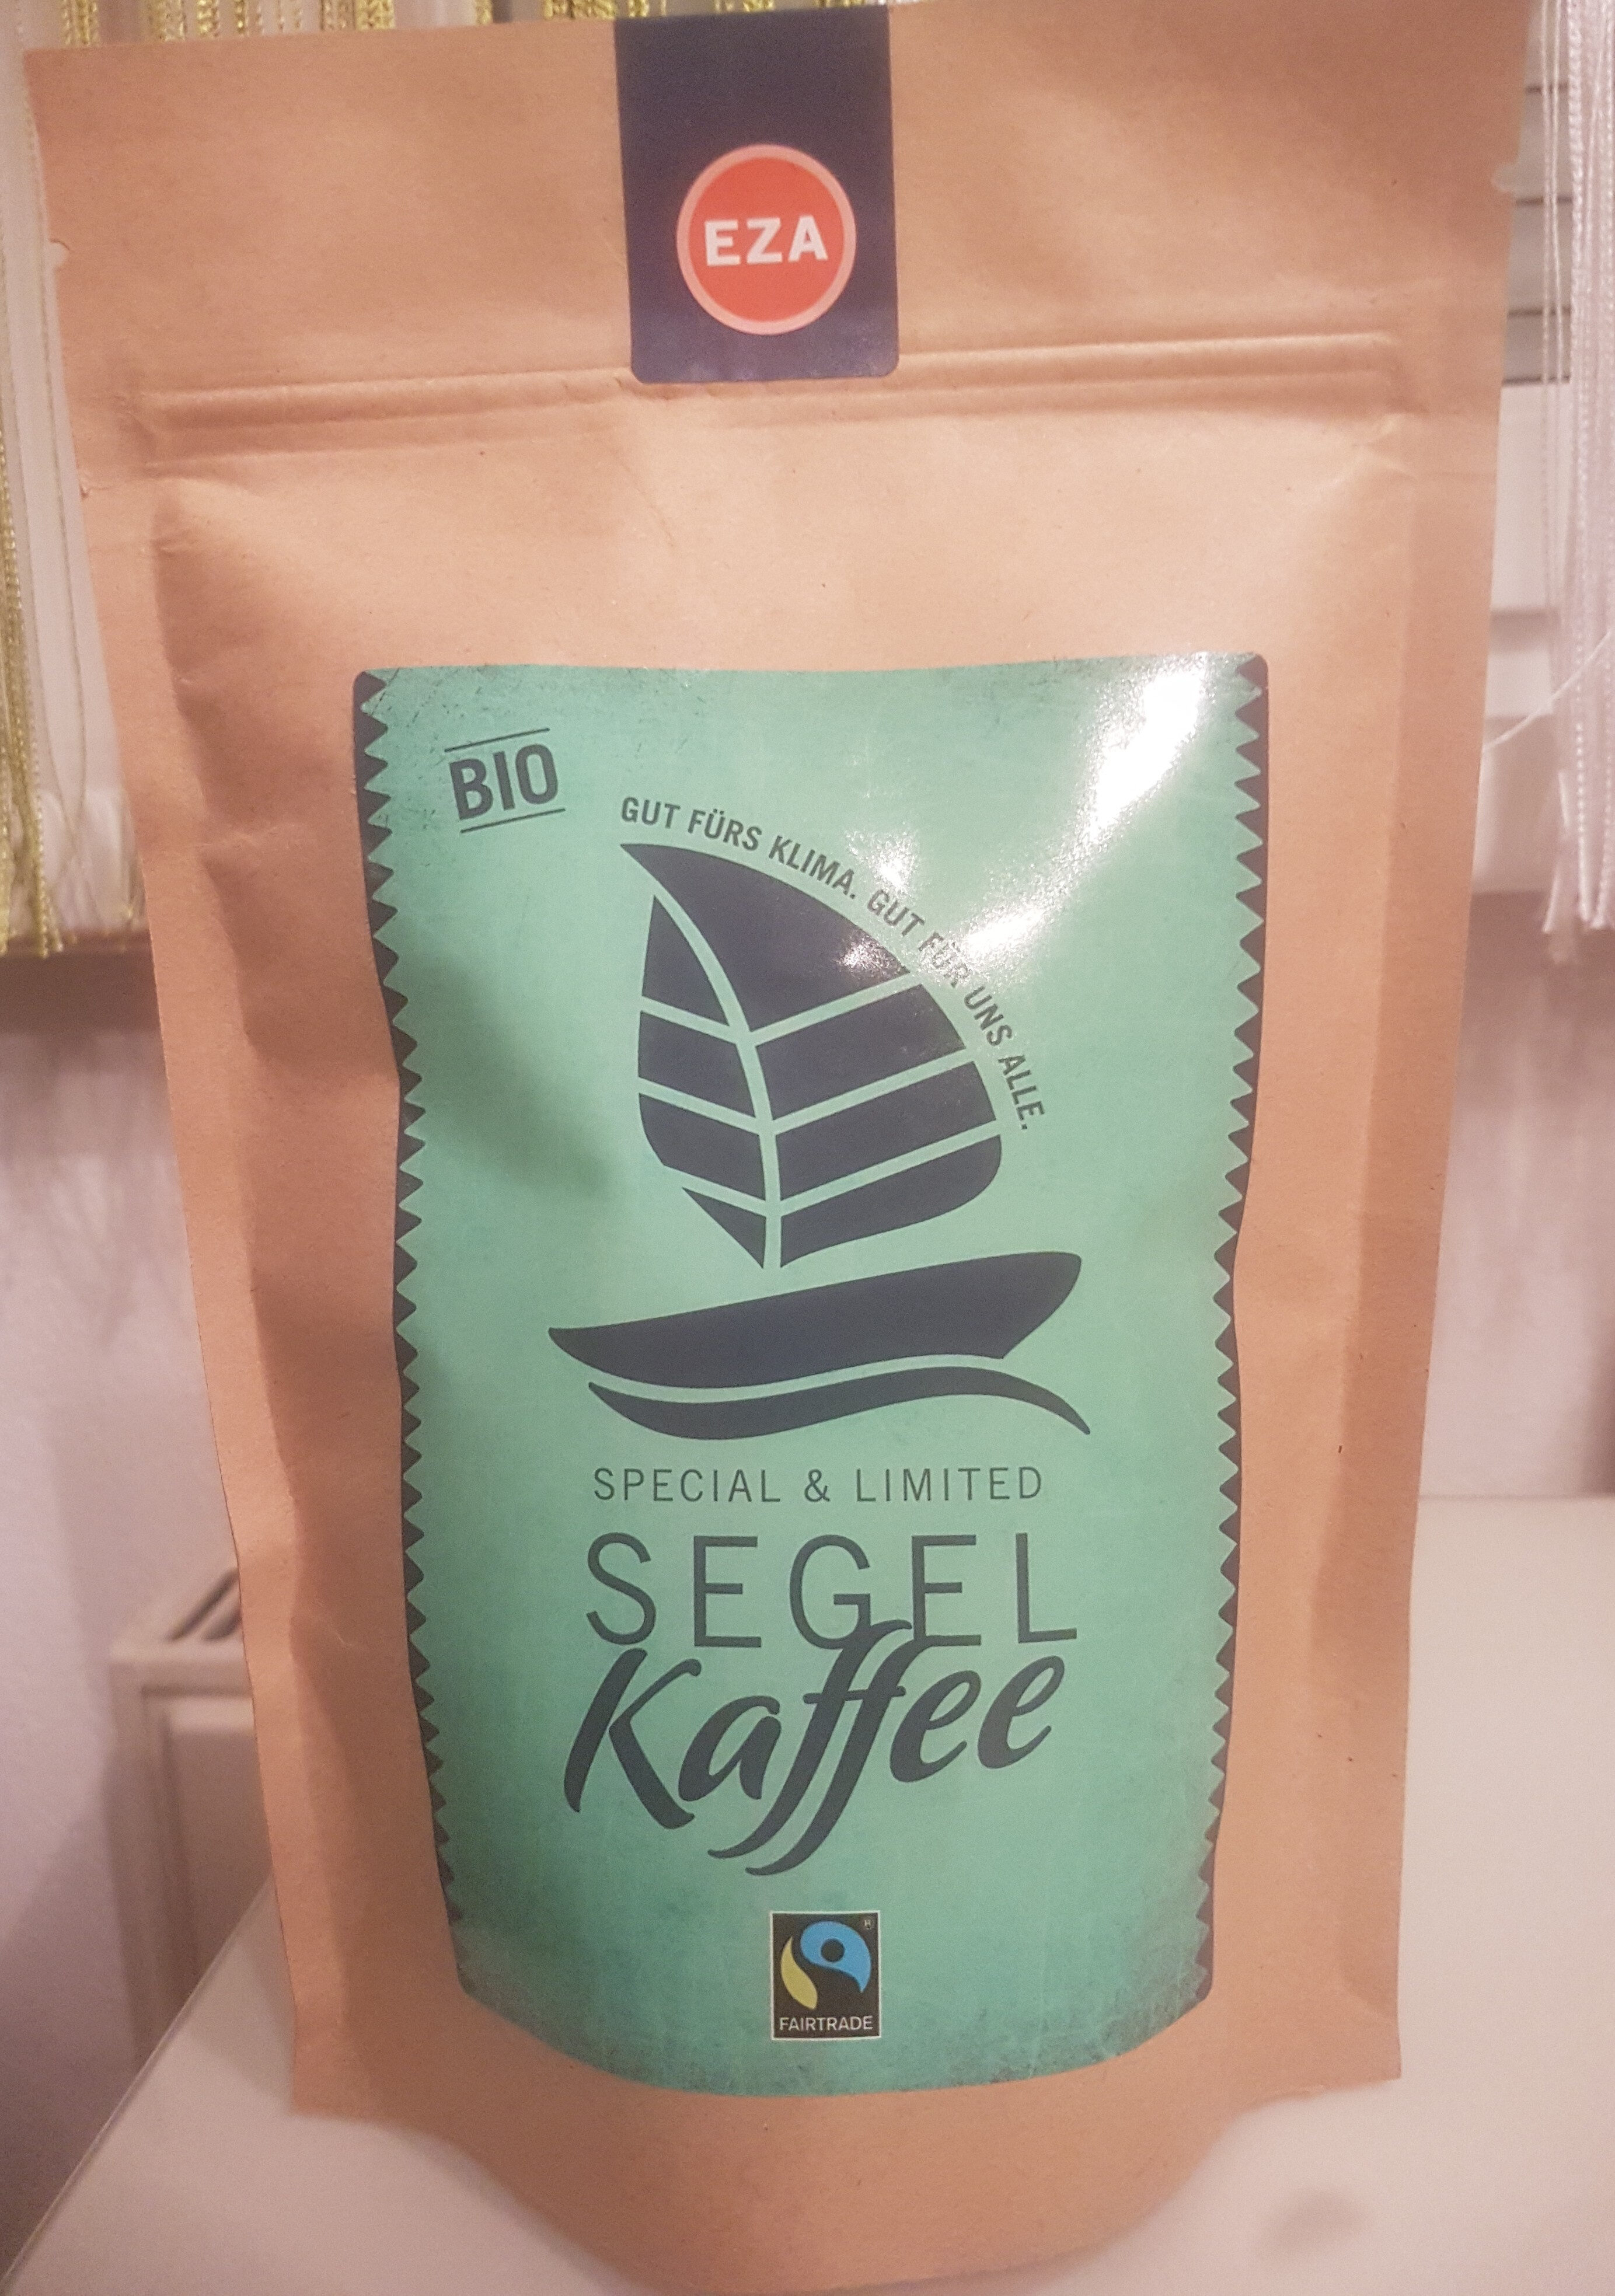 SEGEL Kaffee - Produkt